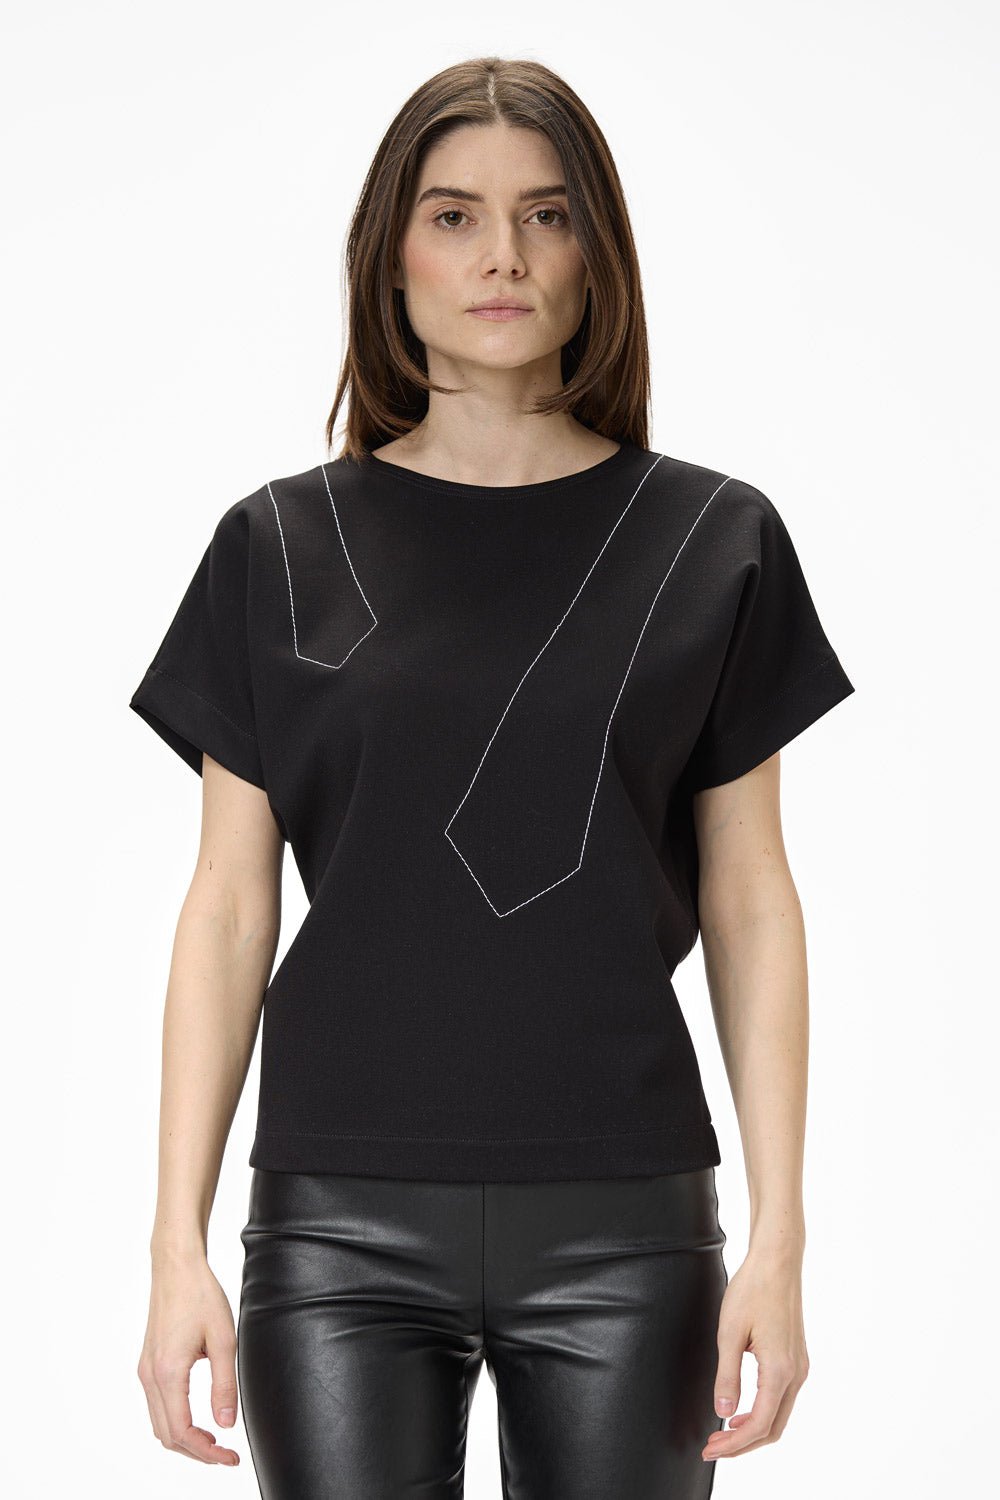 Tricou damă, negru, viscoză premium, croială oversized, detalii elegante (cusături contrastante).